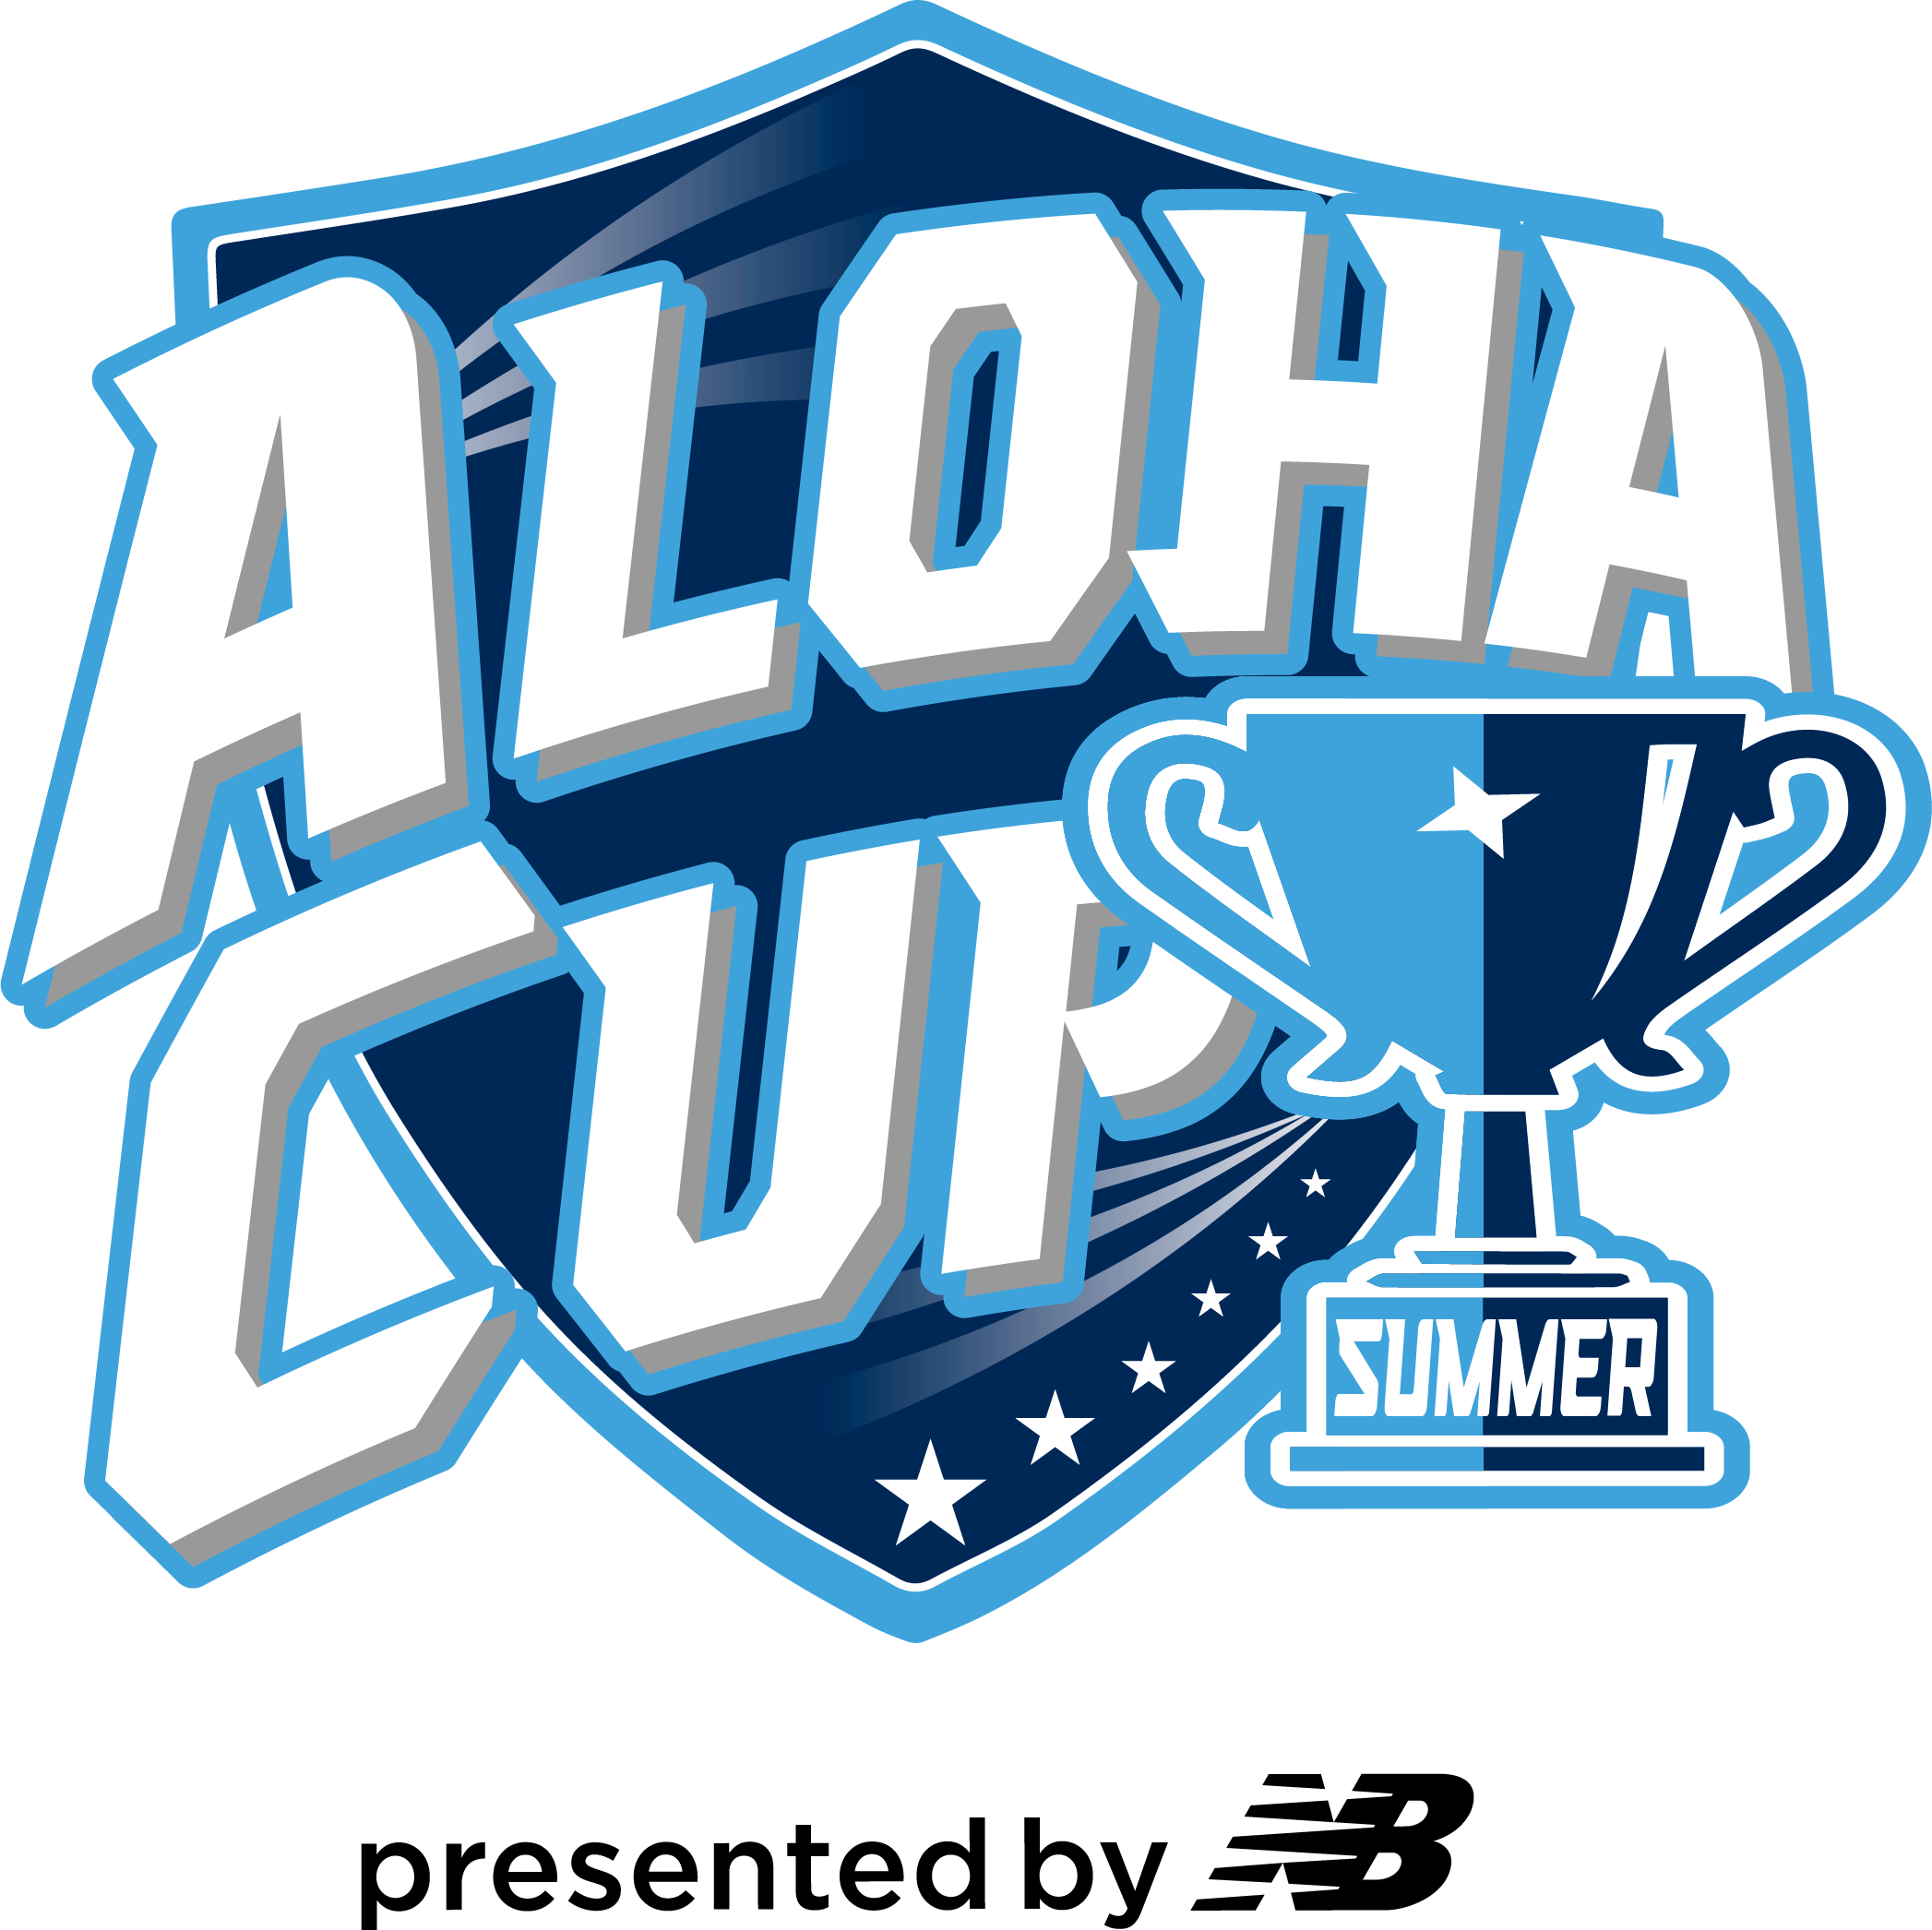 Aloha Cup